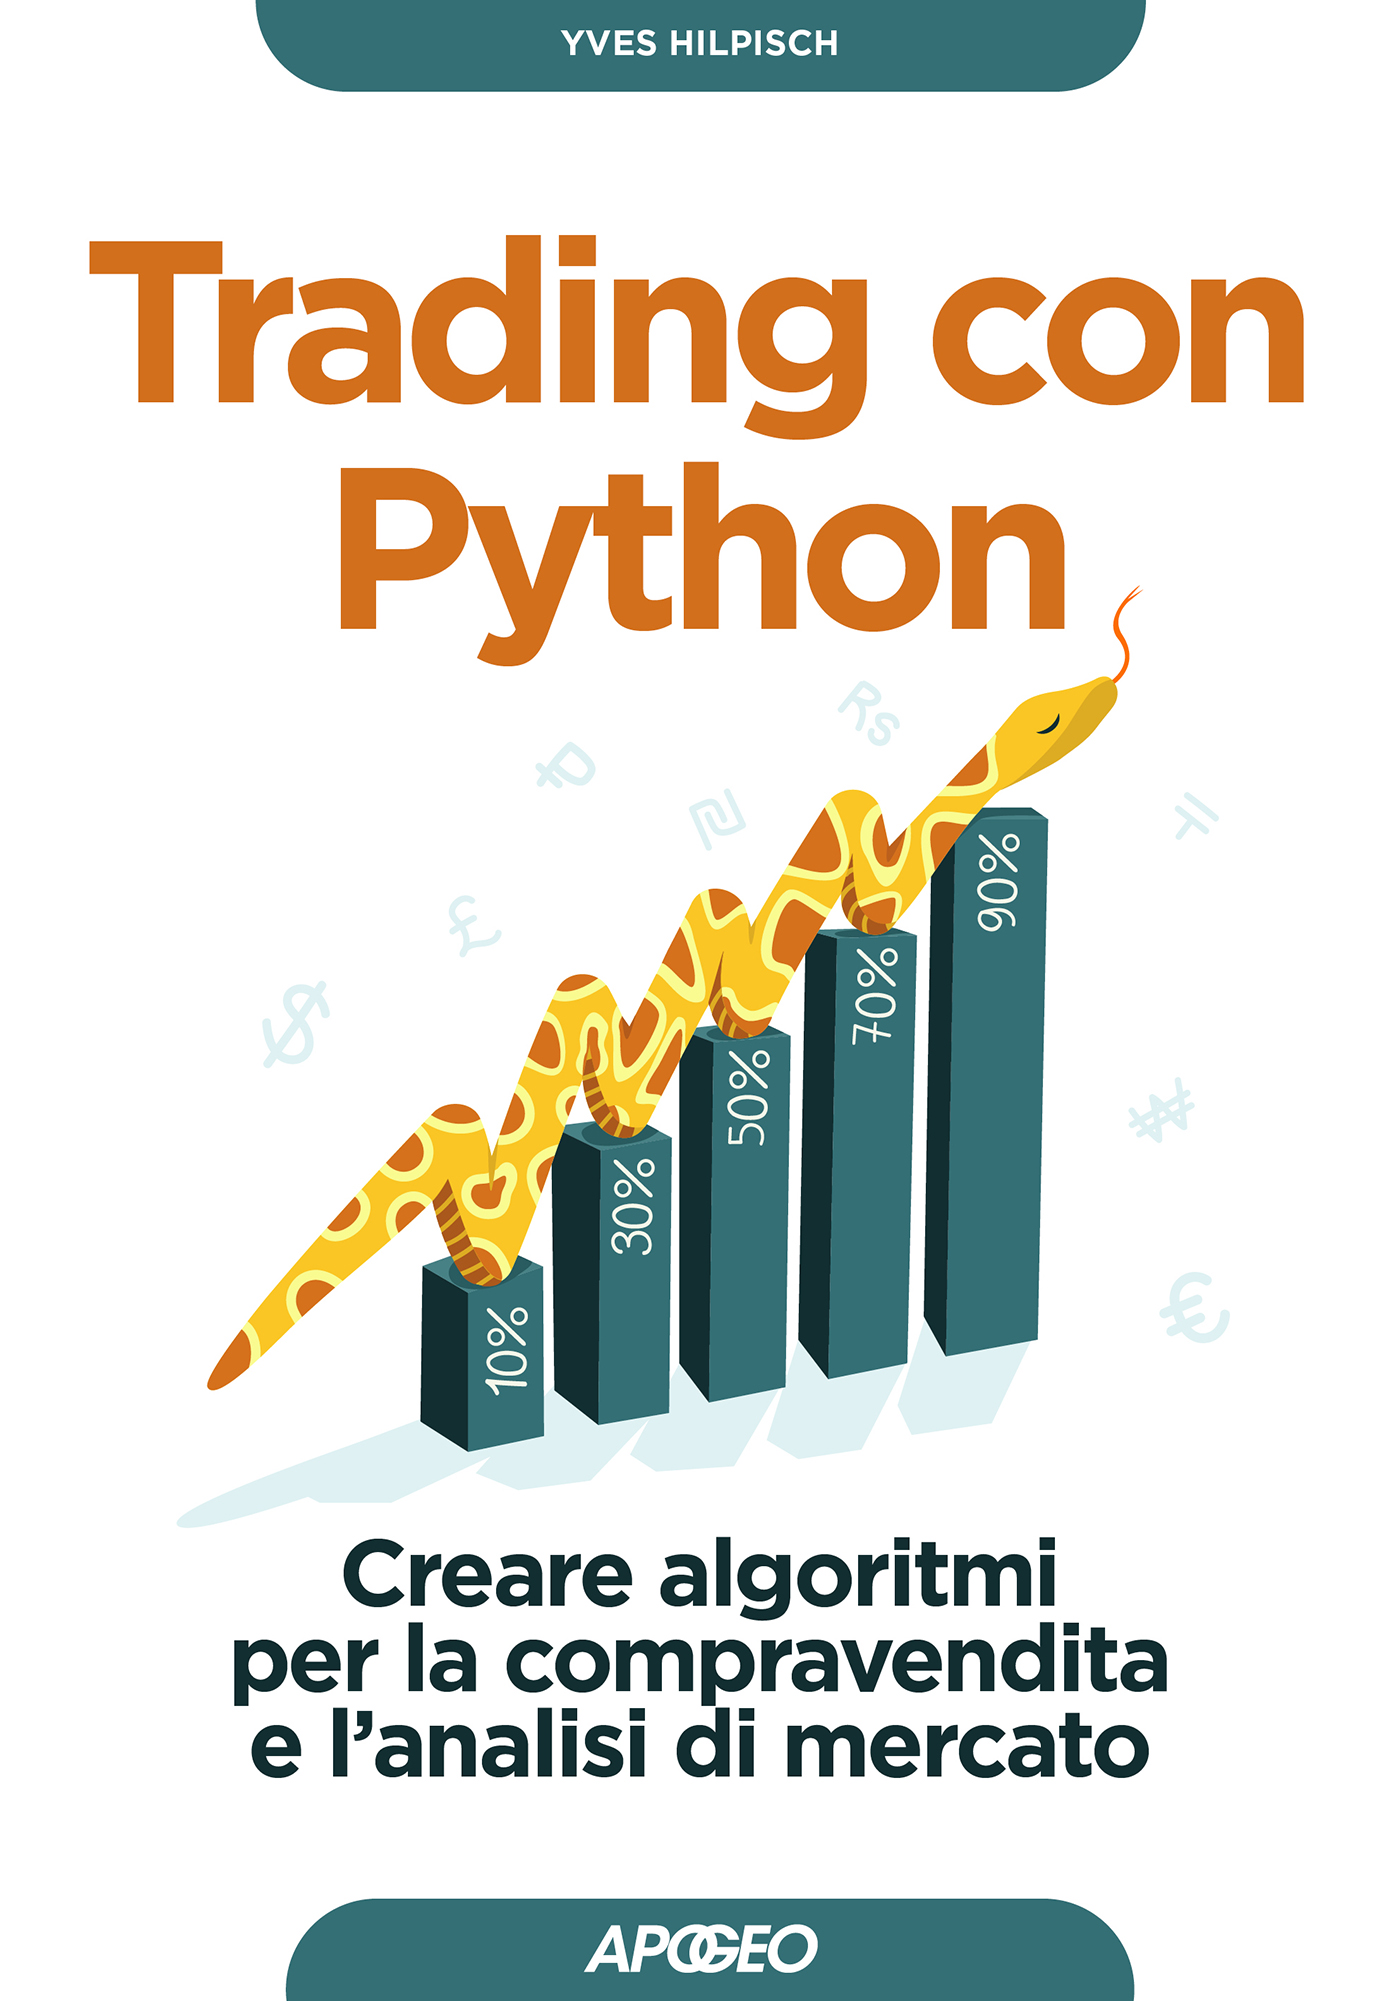 Trading con Python - Creare algoritmi per la compravendita e l'analisi di mercato, di Yves Hilpisch